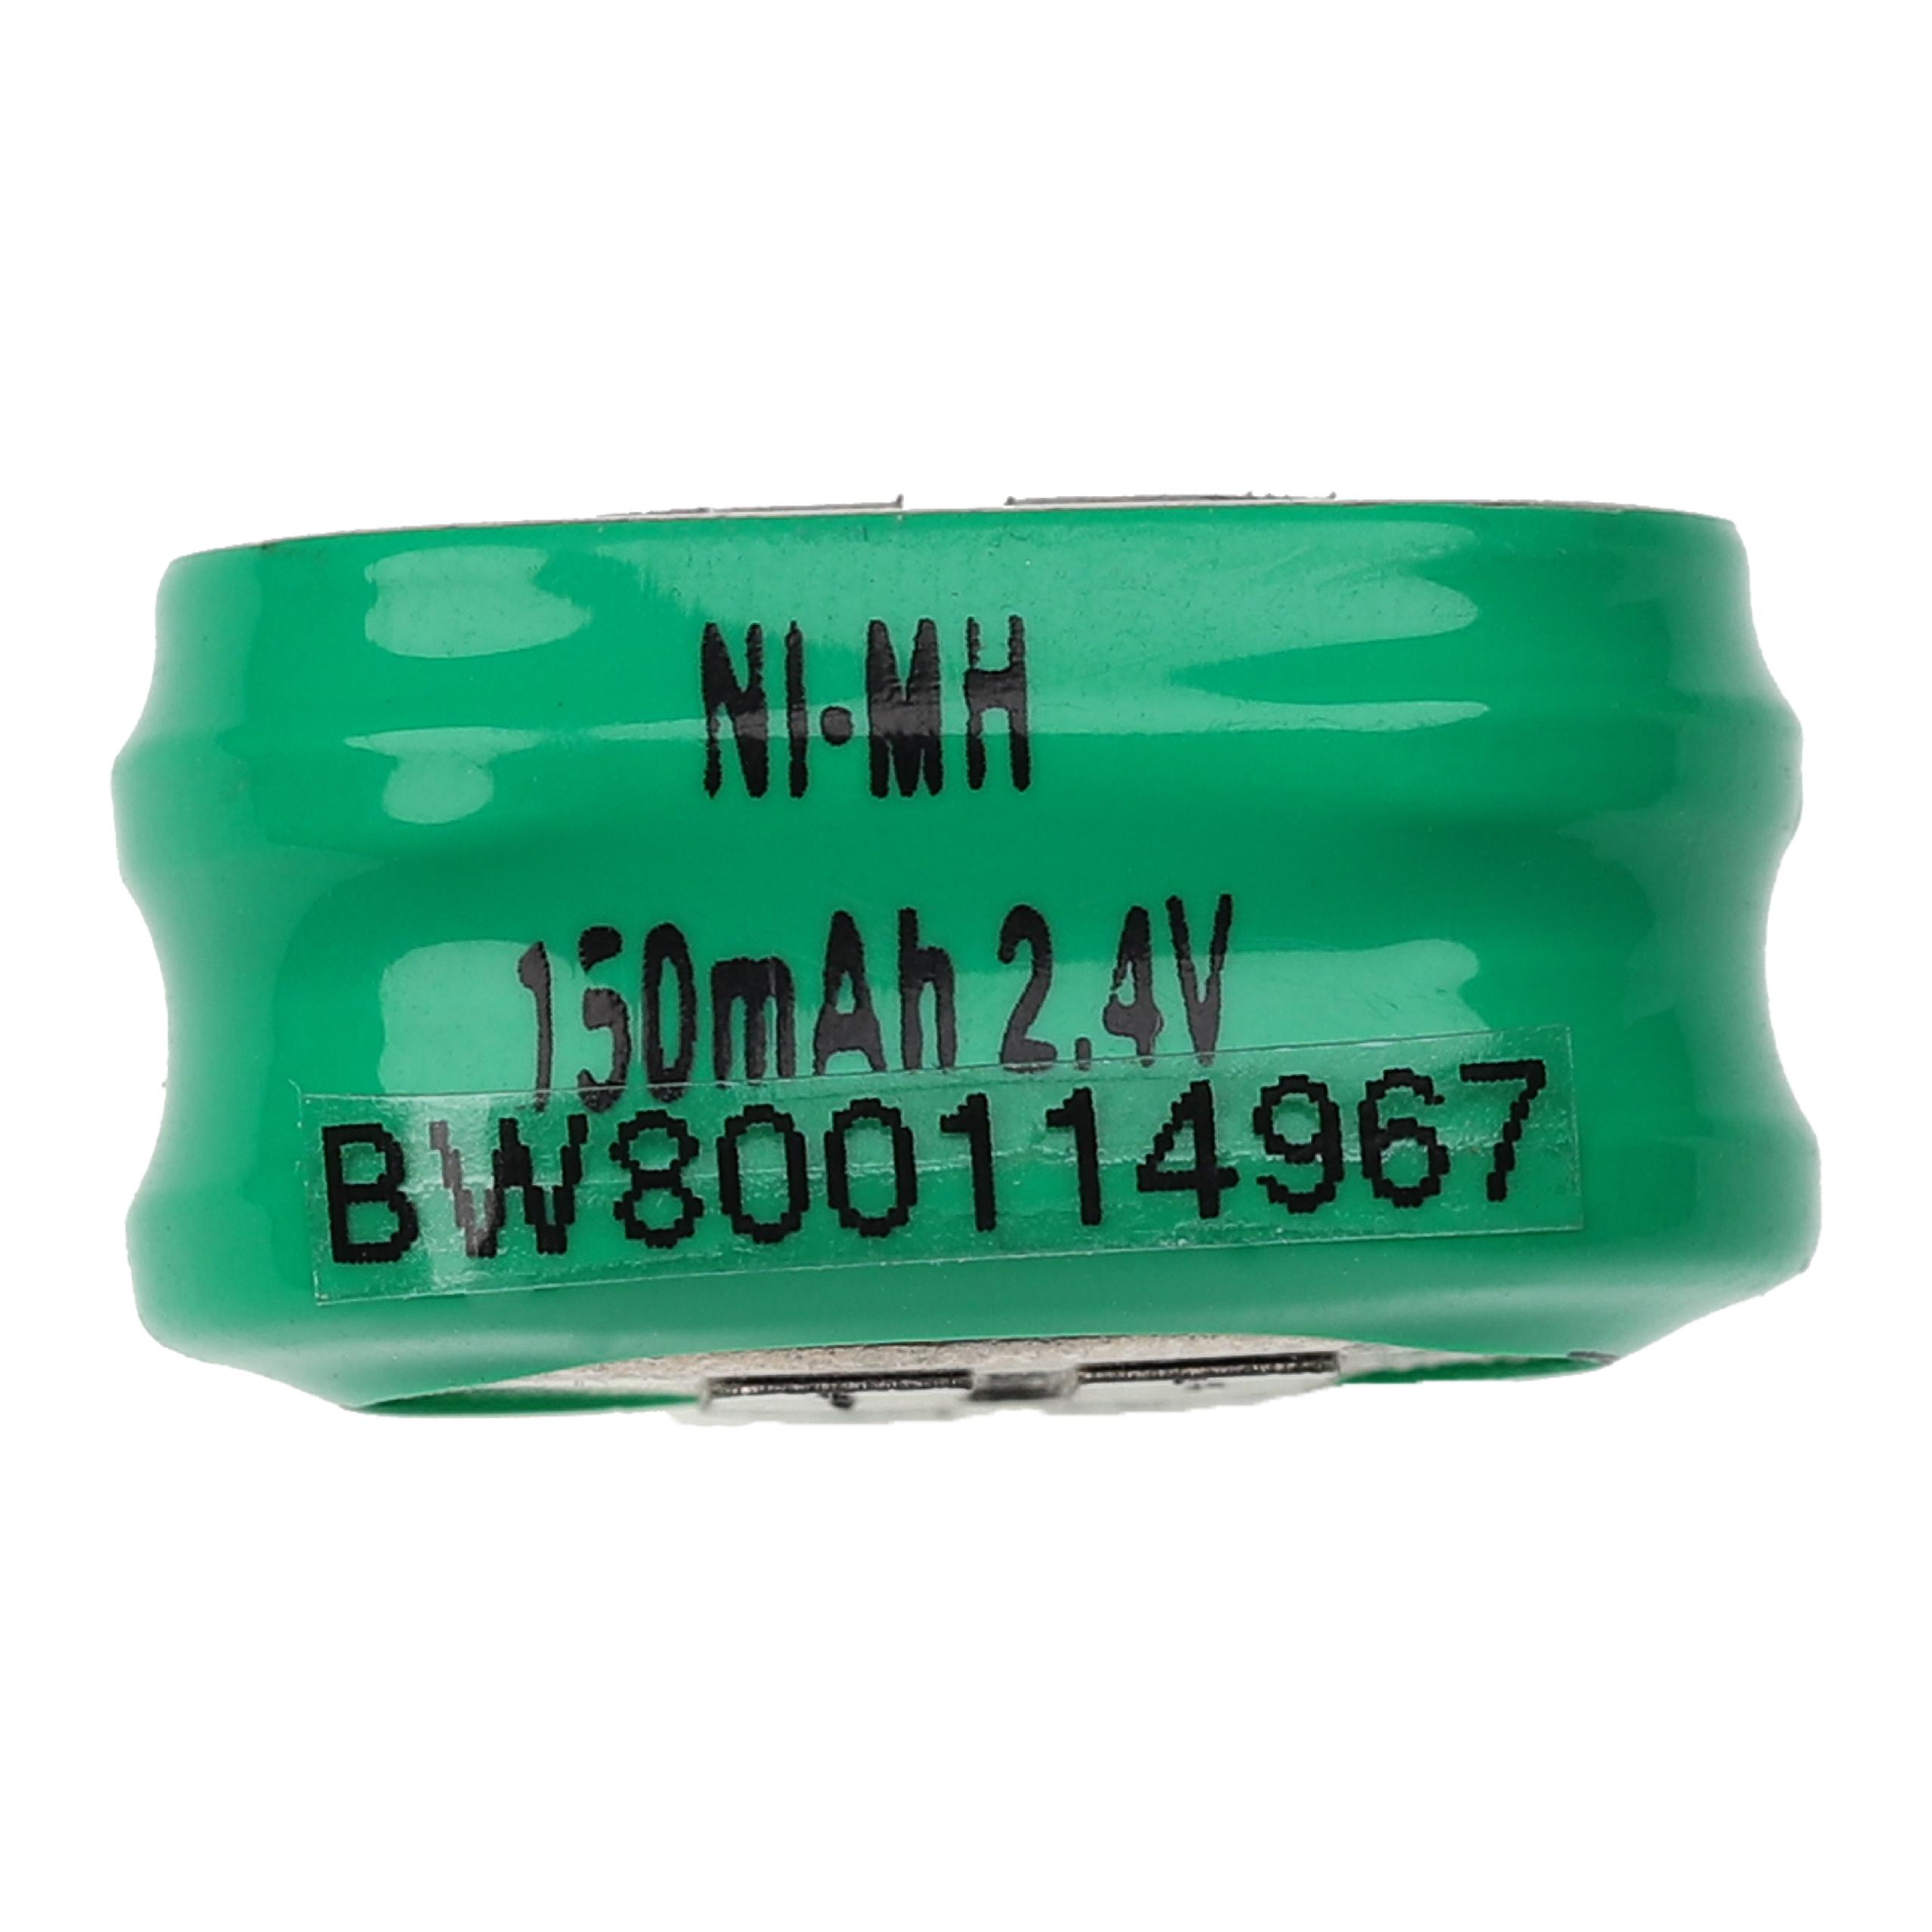 Batteria a bottone (2x cella) tipo 2/V150H 3 pin sostituisce 2/V150H per modellismo, luci solari ecc. 